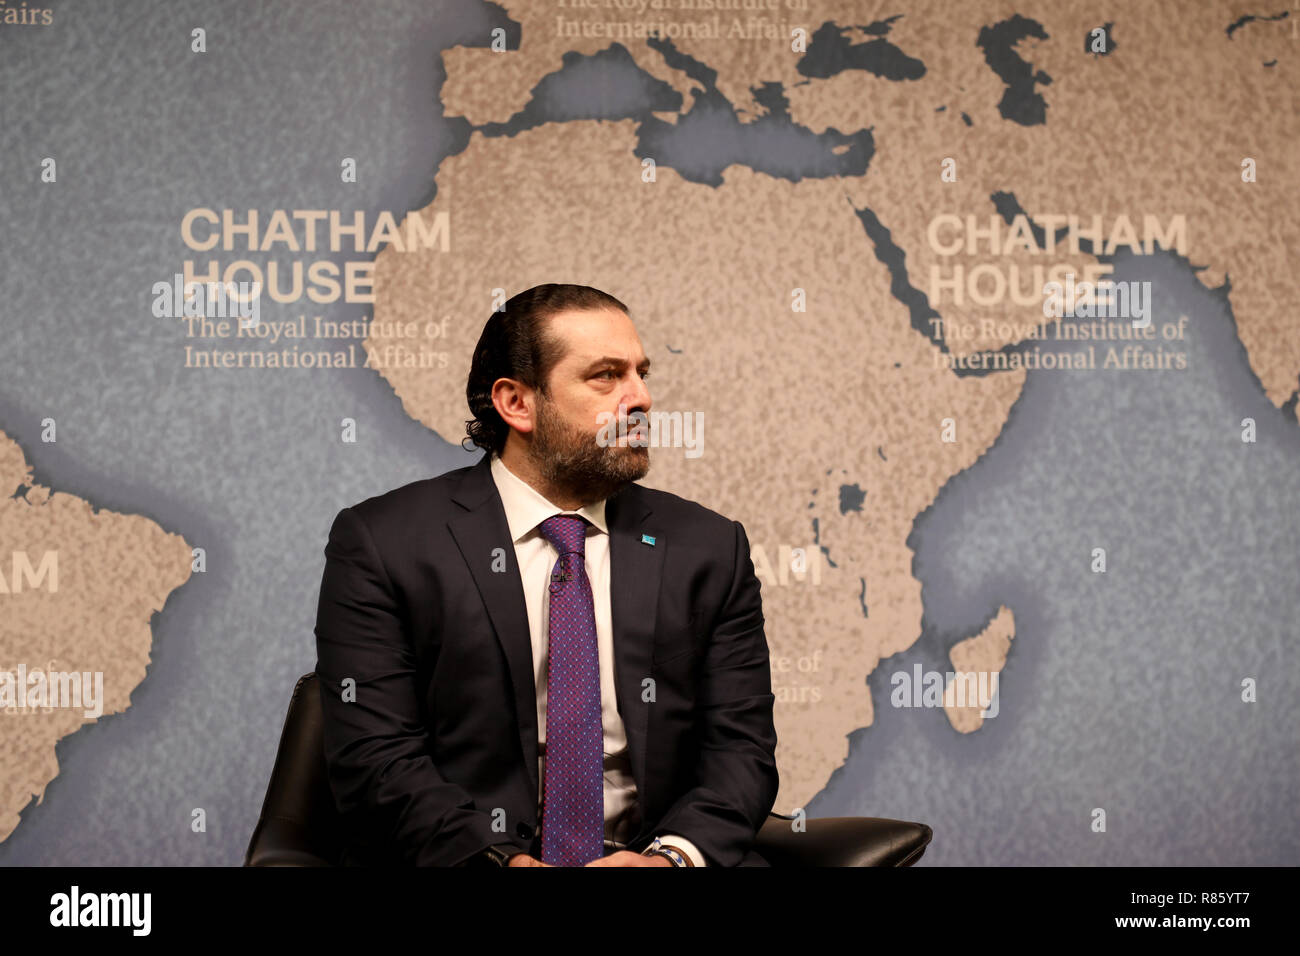 Londres/UK - Diciembre 13, 2018: Saad Hariri, Primer Ministro de Líbano, hablando en el think tank Chatham House en Londres Crédito: Dominic Dudley/Alamy Live News Foto de stock